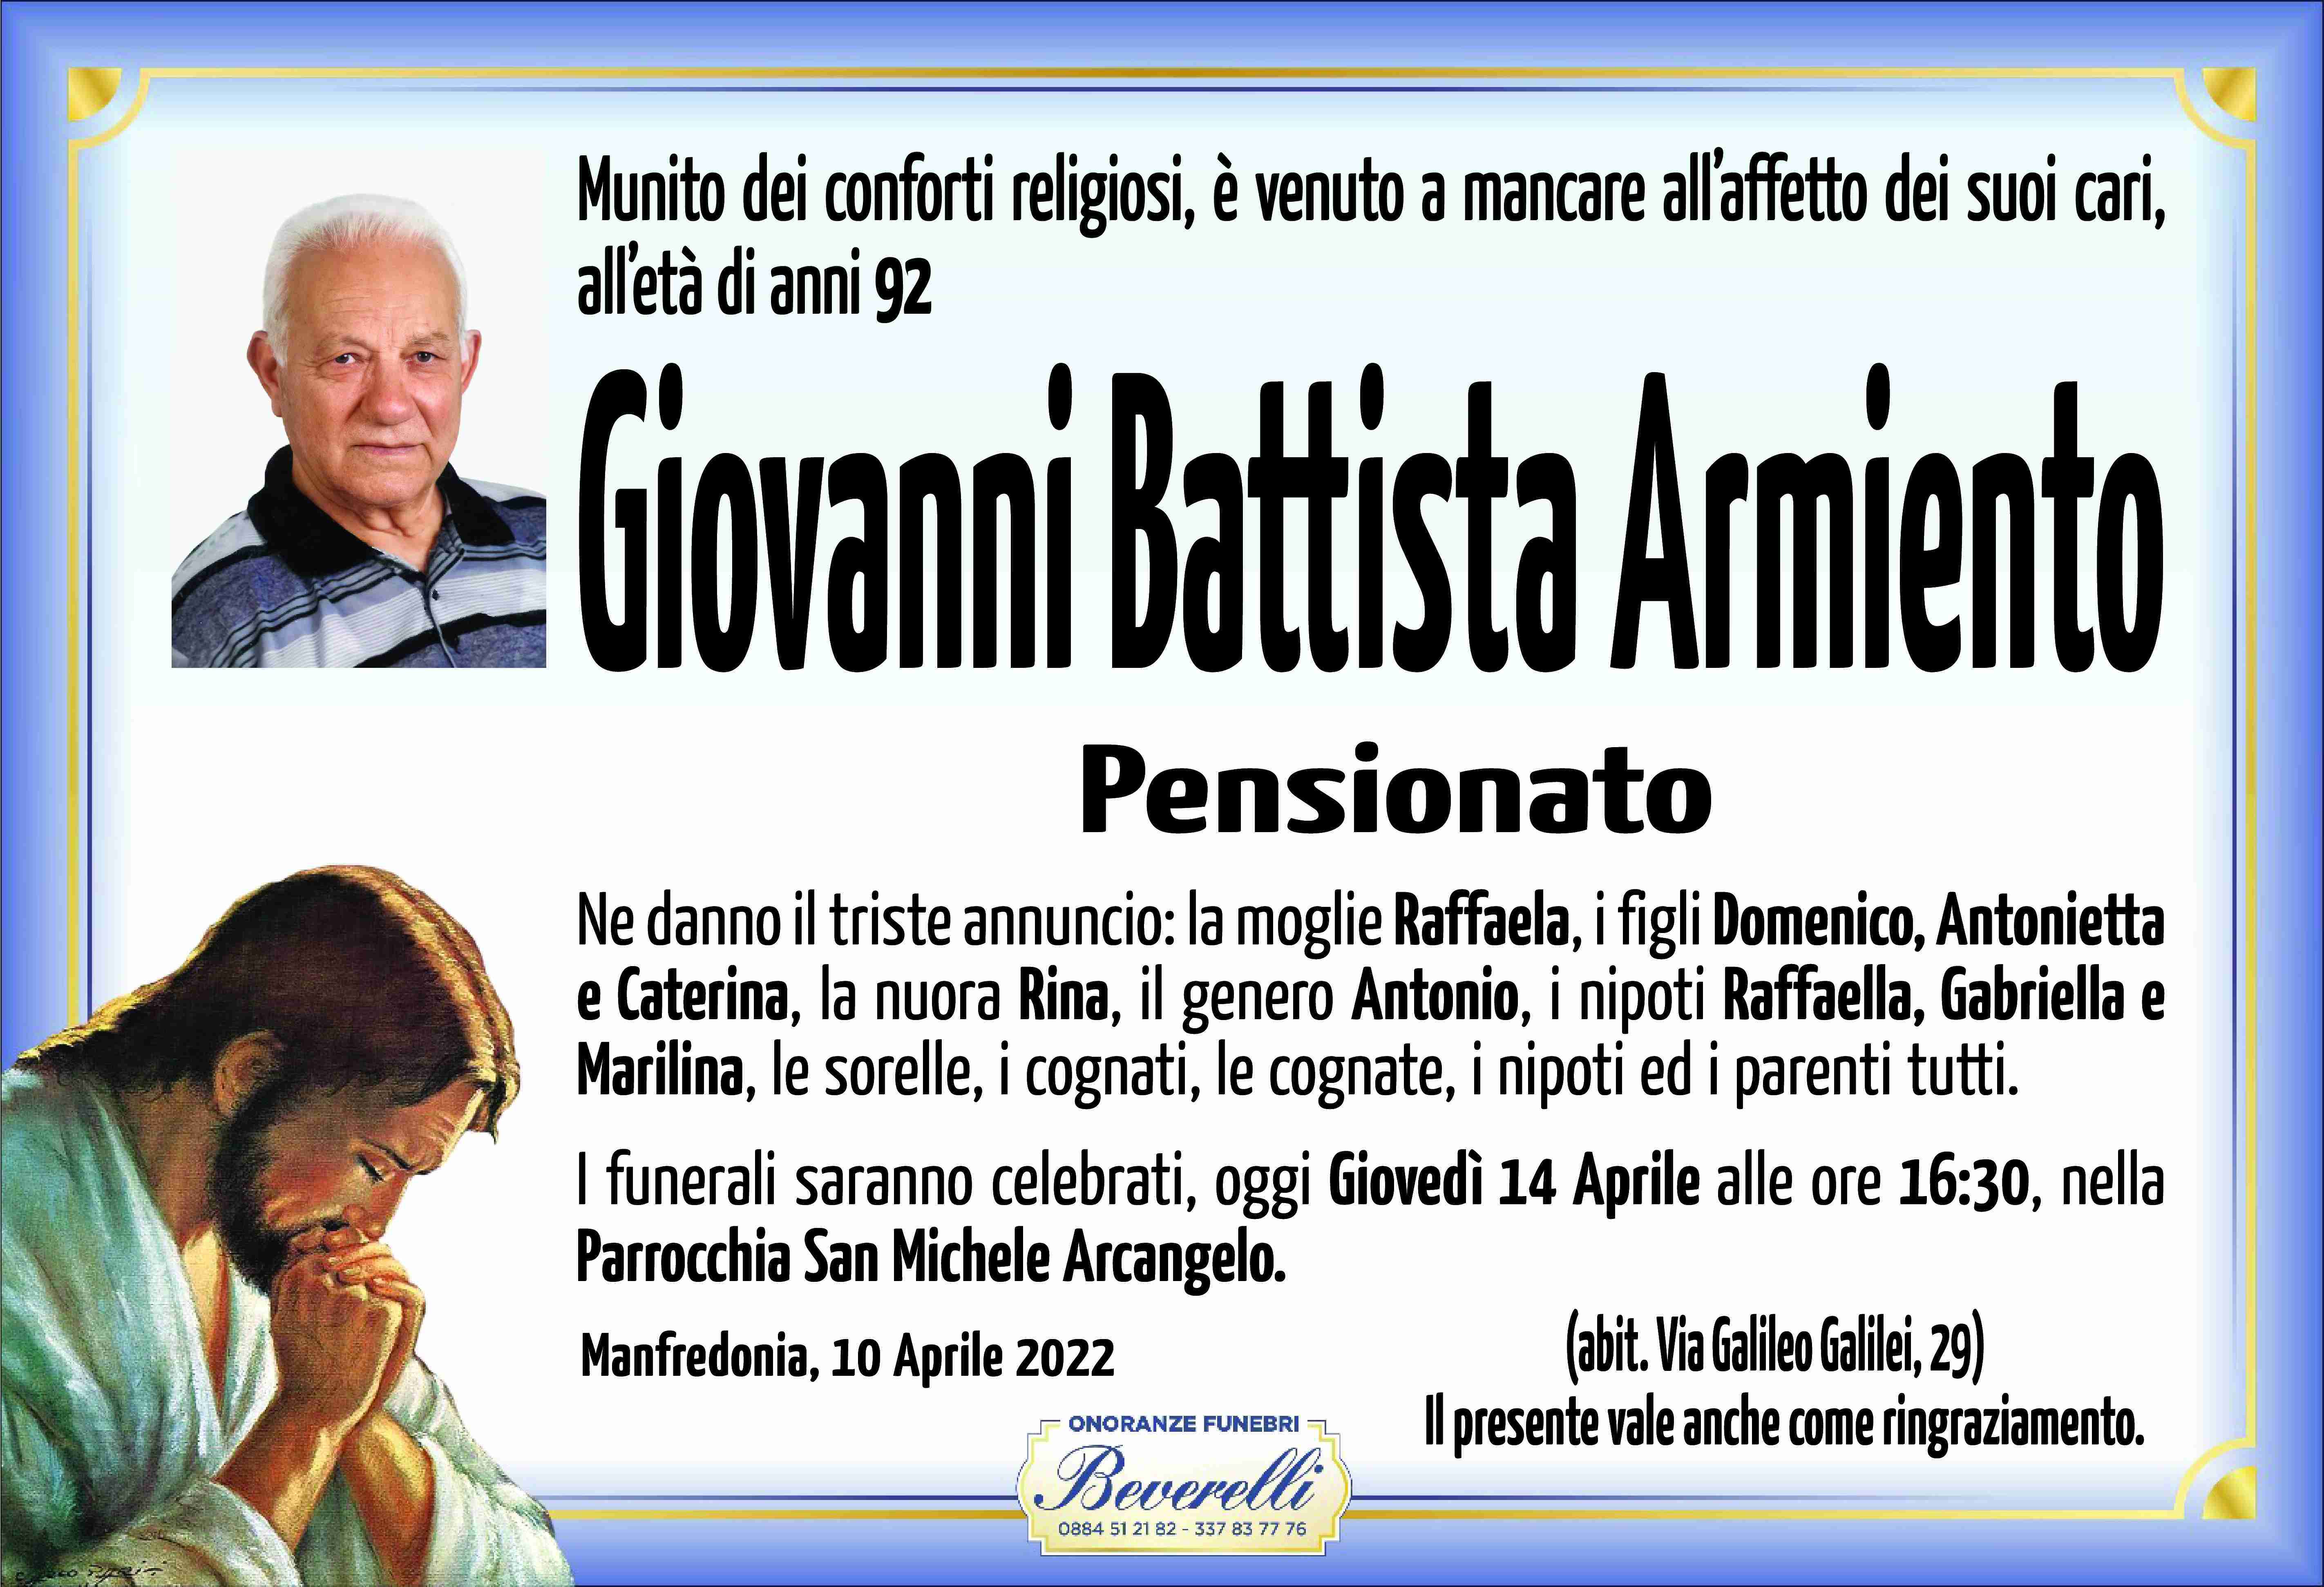 Giovanni Battista Armiento